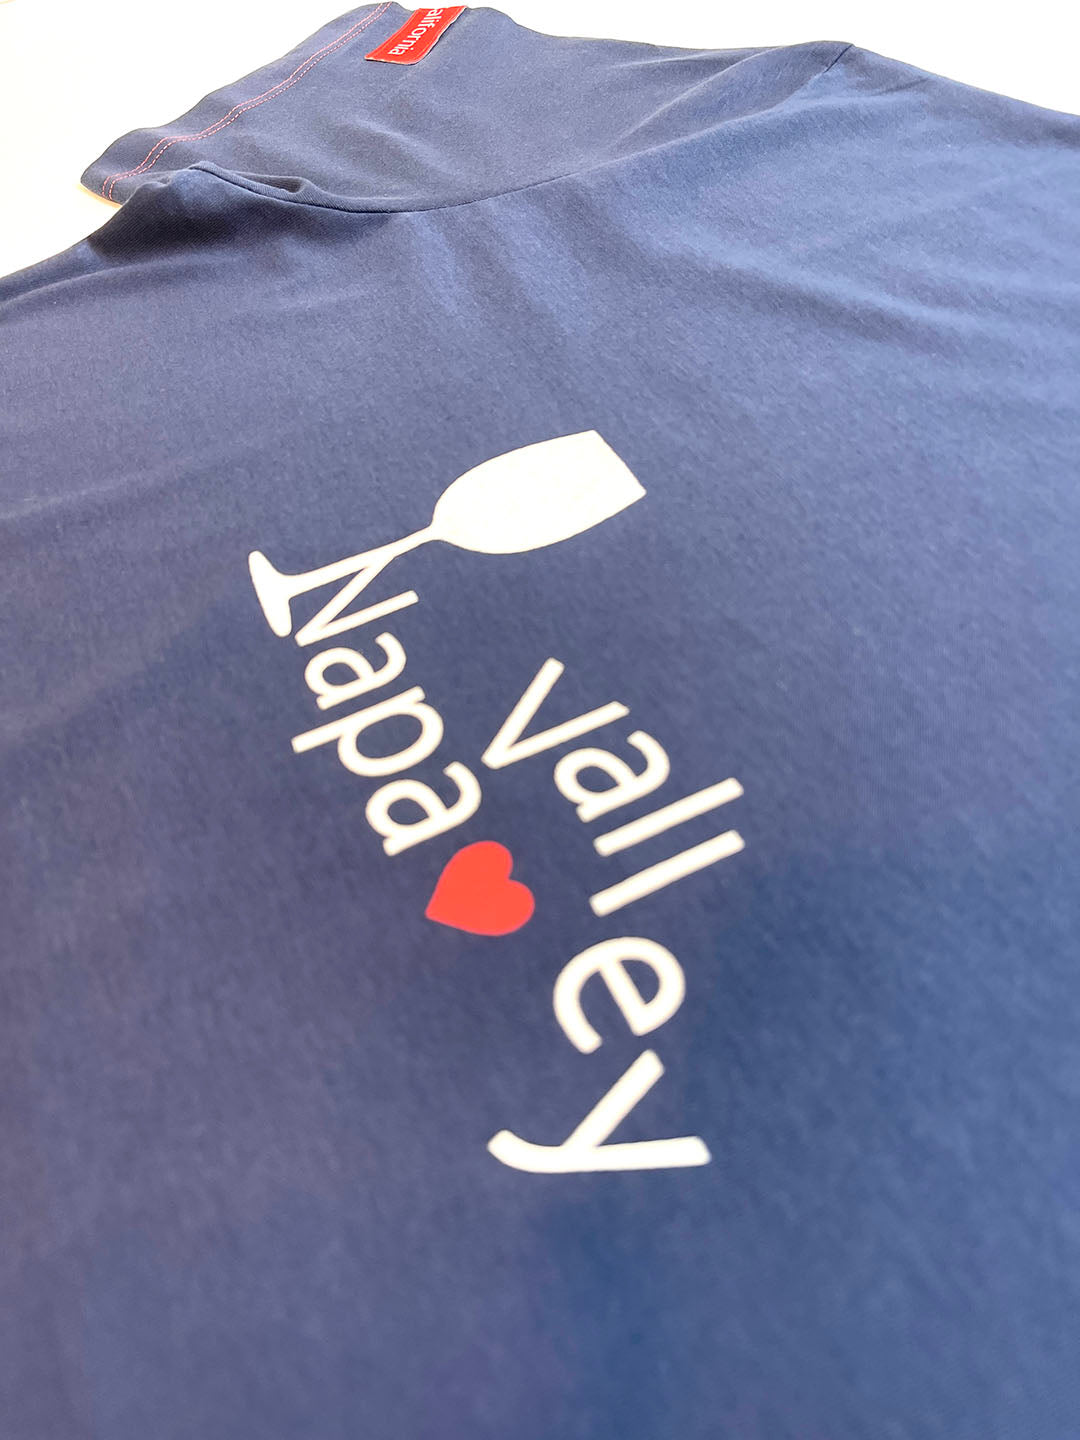 "Napa Valley" T Shirt